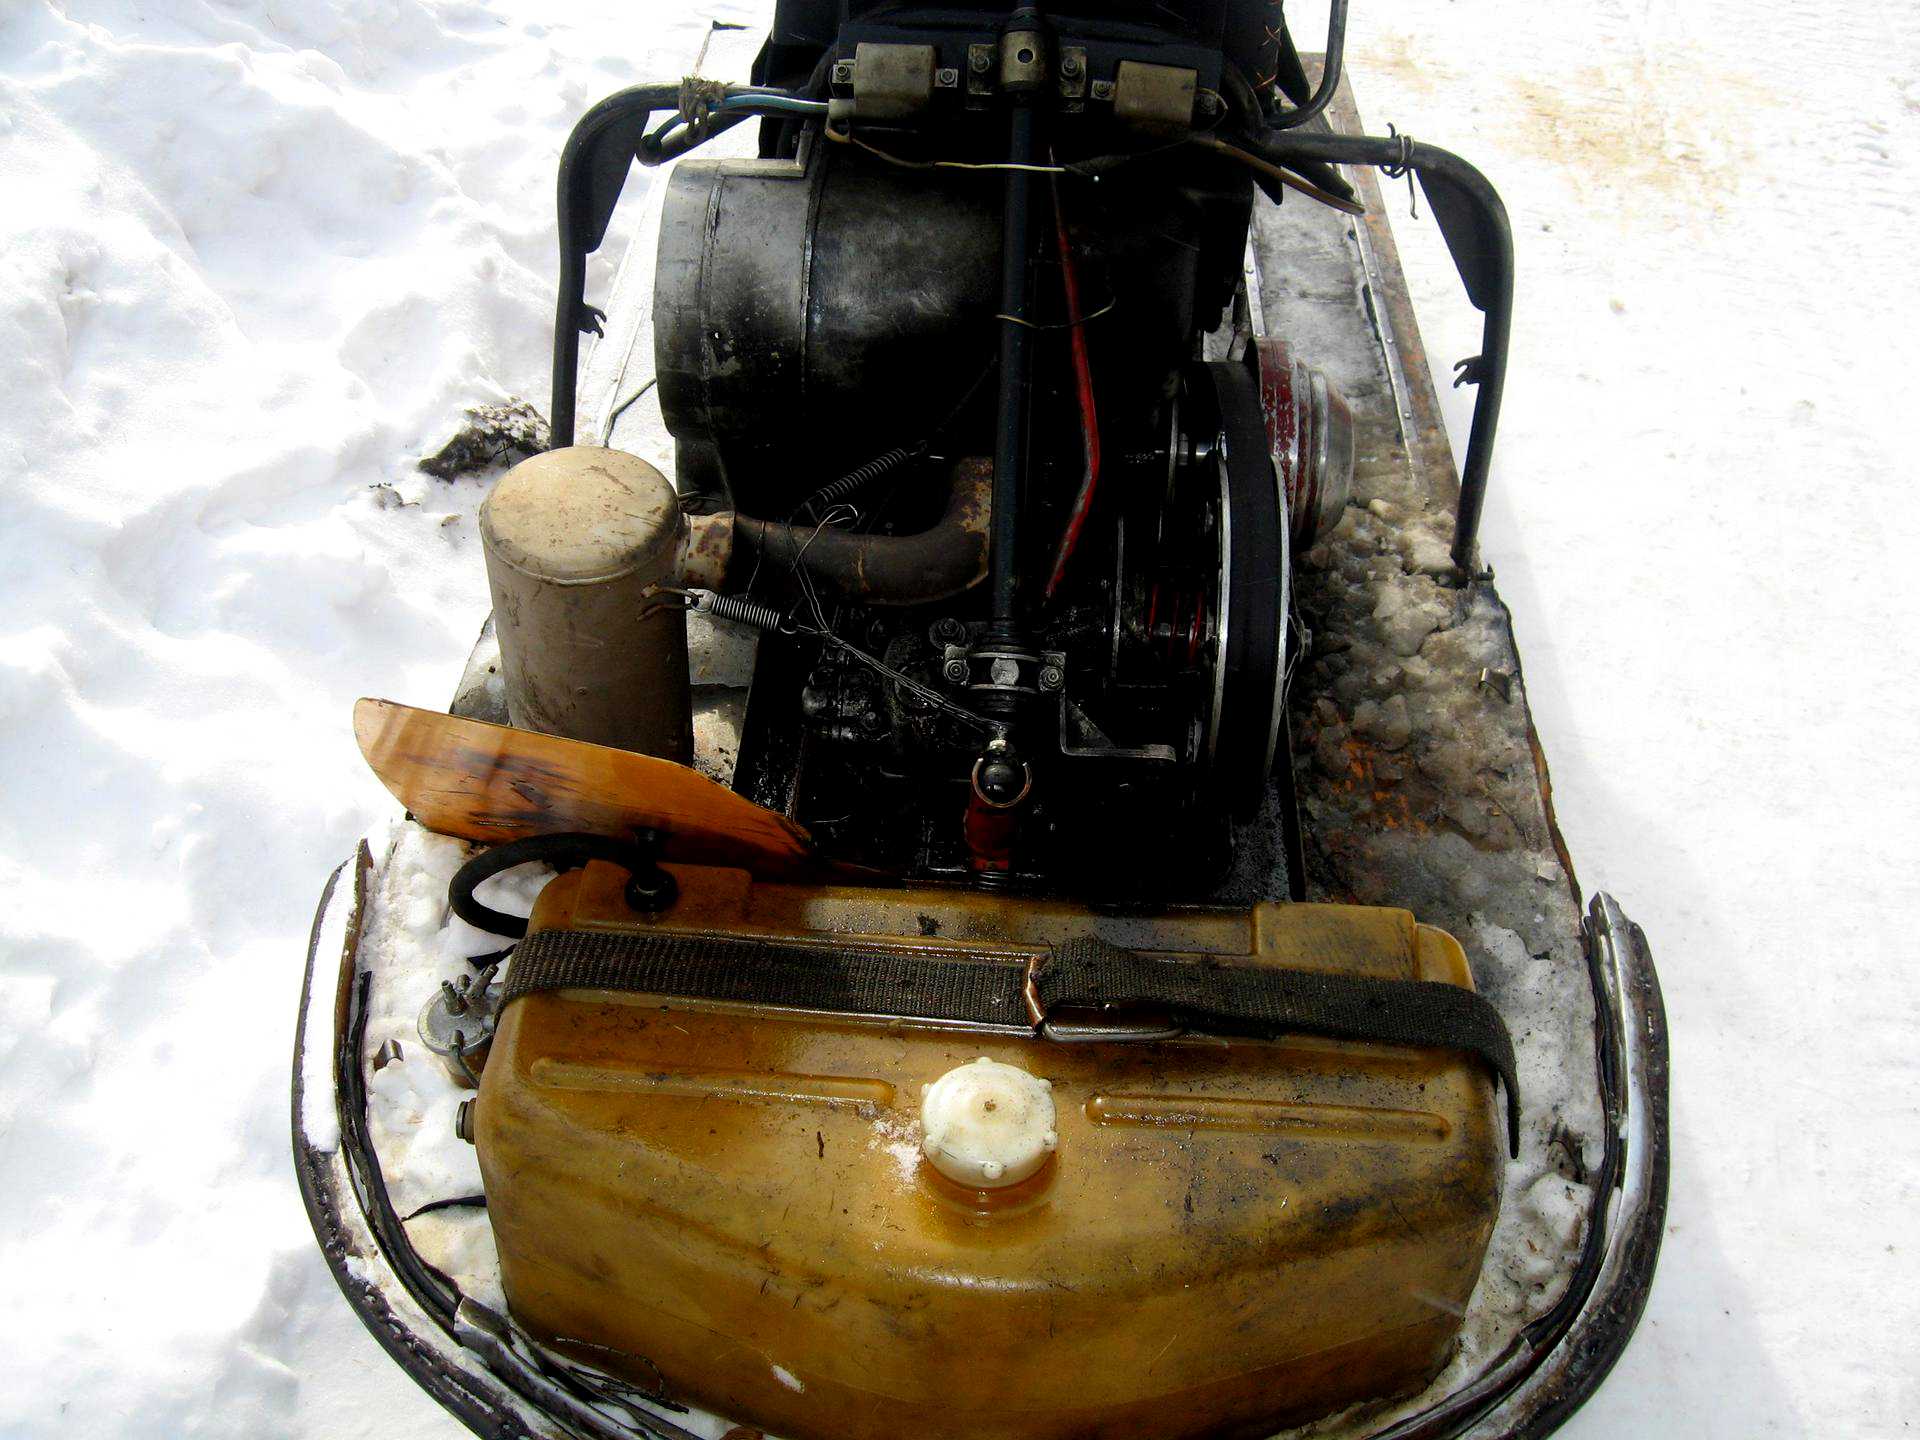 Цилиндр снегоход буран. Моторный отсек снегохода Буран. Снегоход Буран с дв 2106. Буран снегоход старый двигатель. Подкапотное пространство снегохода Буран.